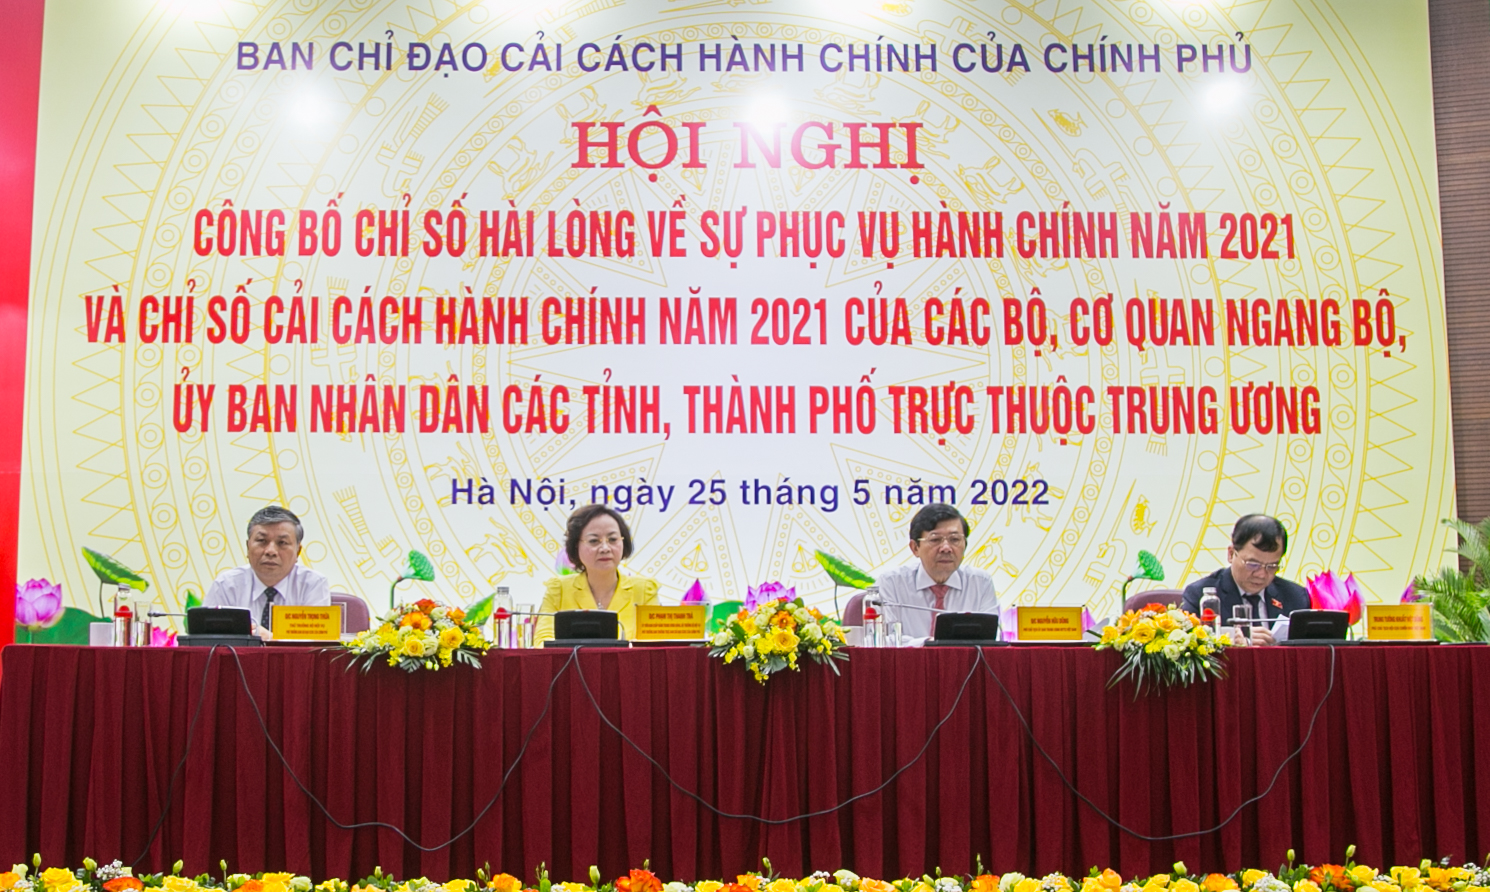 Những thành tựu nổi bật trong công tác cải cách hành chính nhà nước ở Việt Nam từ thời kỳ đổi mới đến nay